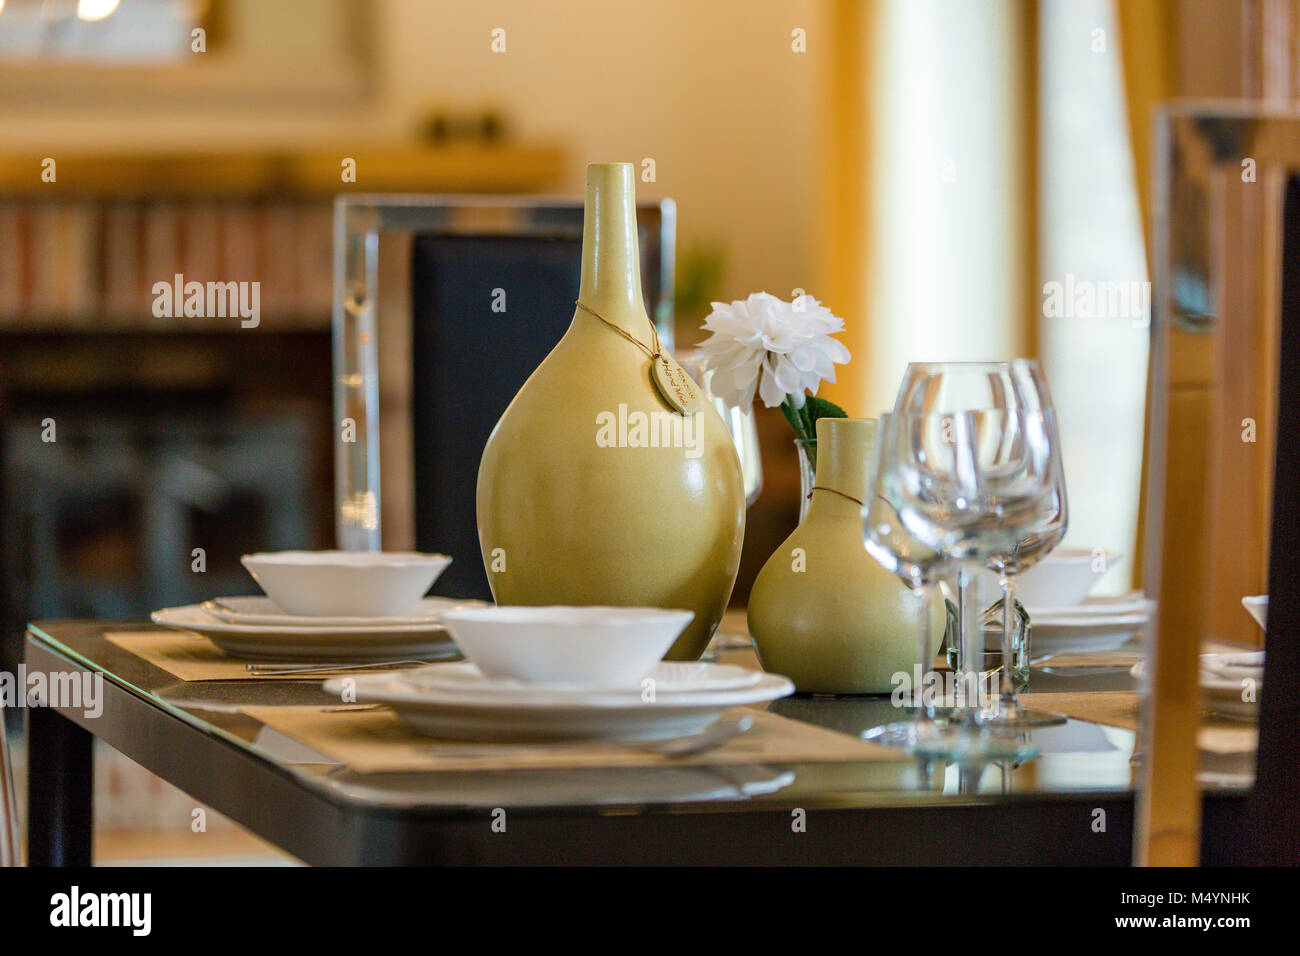 Primo piano di una messa in tavola con coppa, piatti, bicchieri da vino e vasi. Allestimento della casa. Interni. Foto Stock